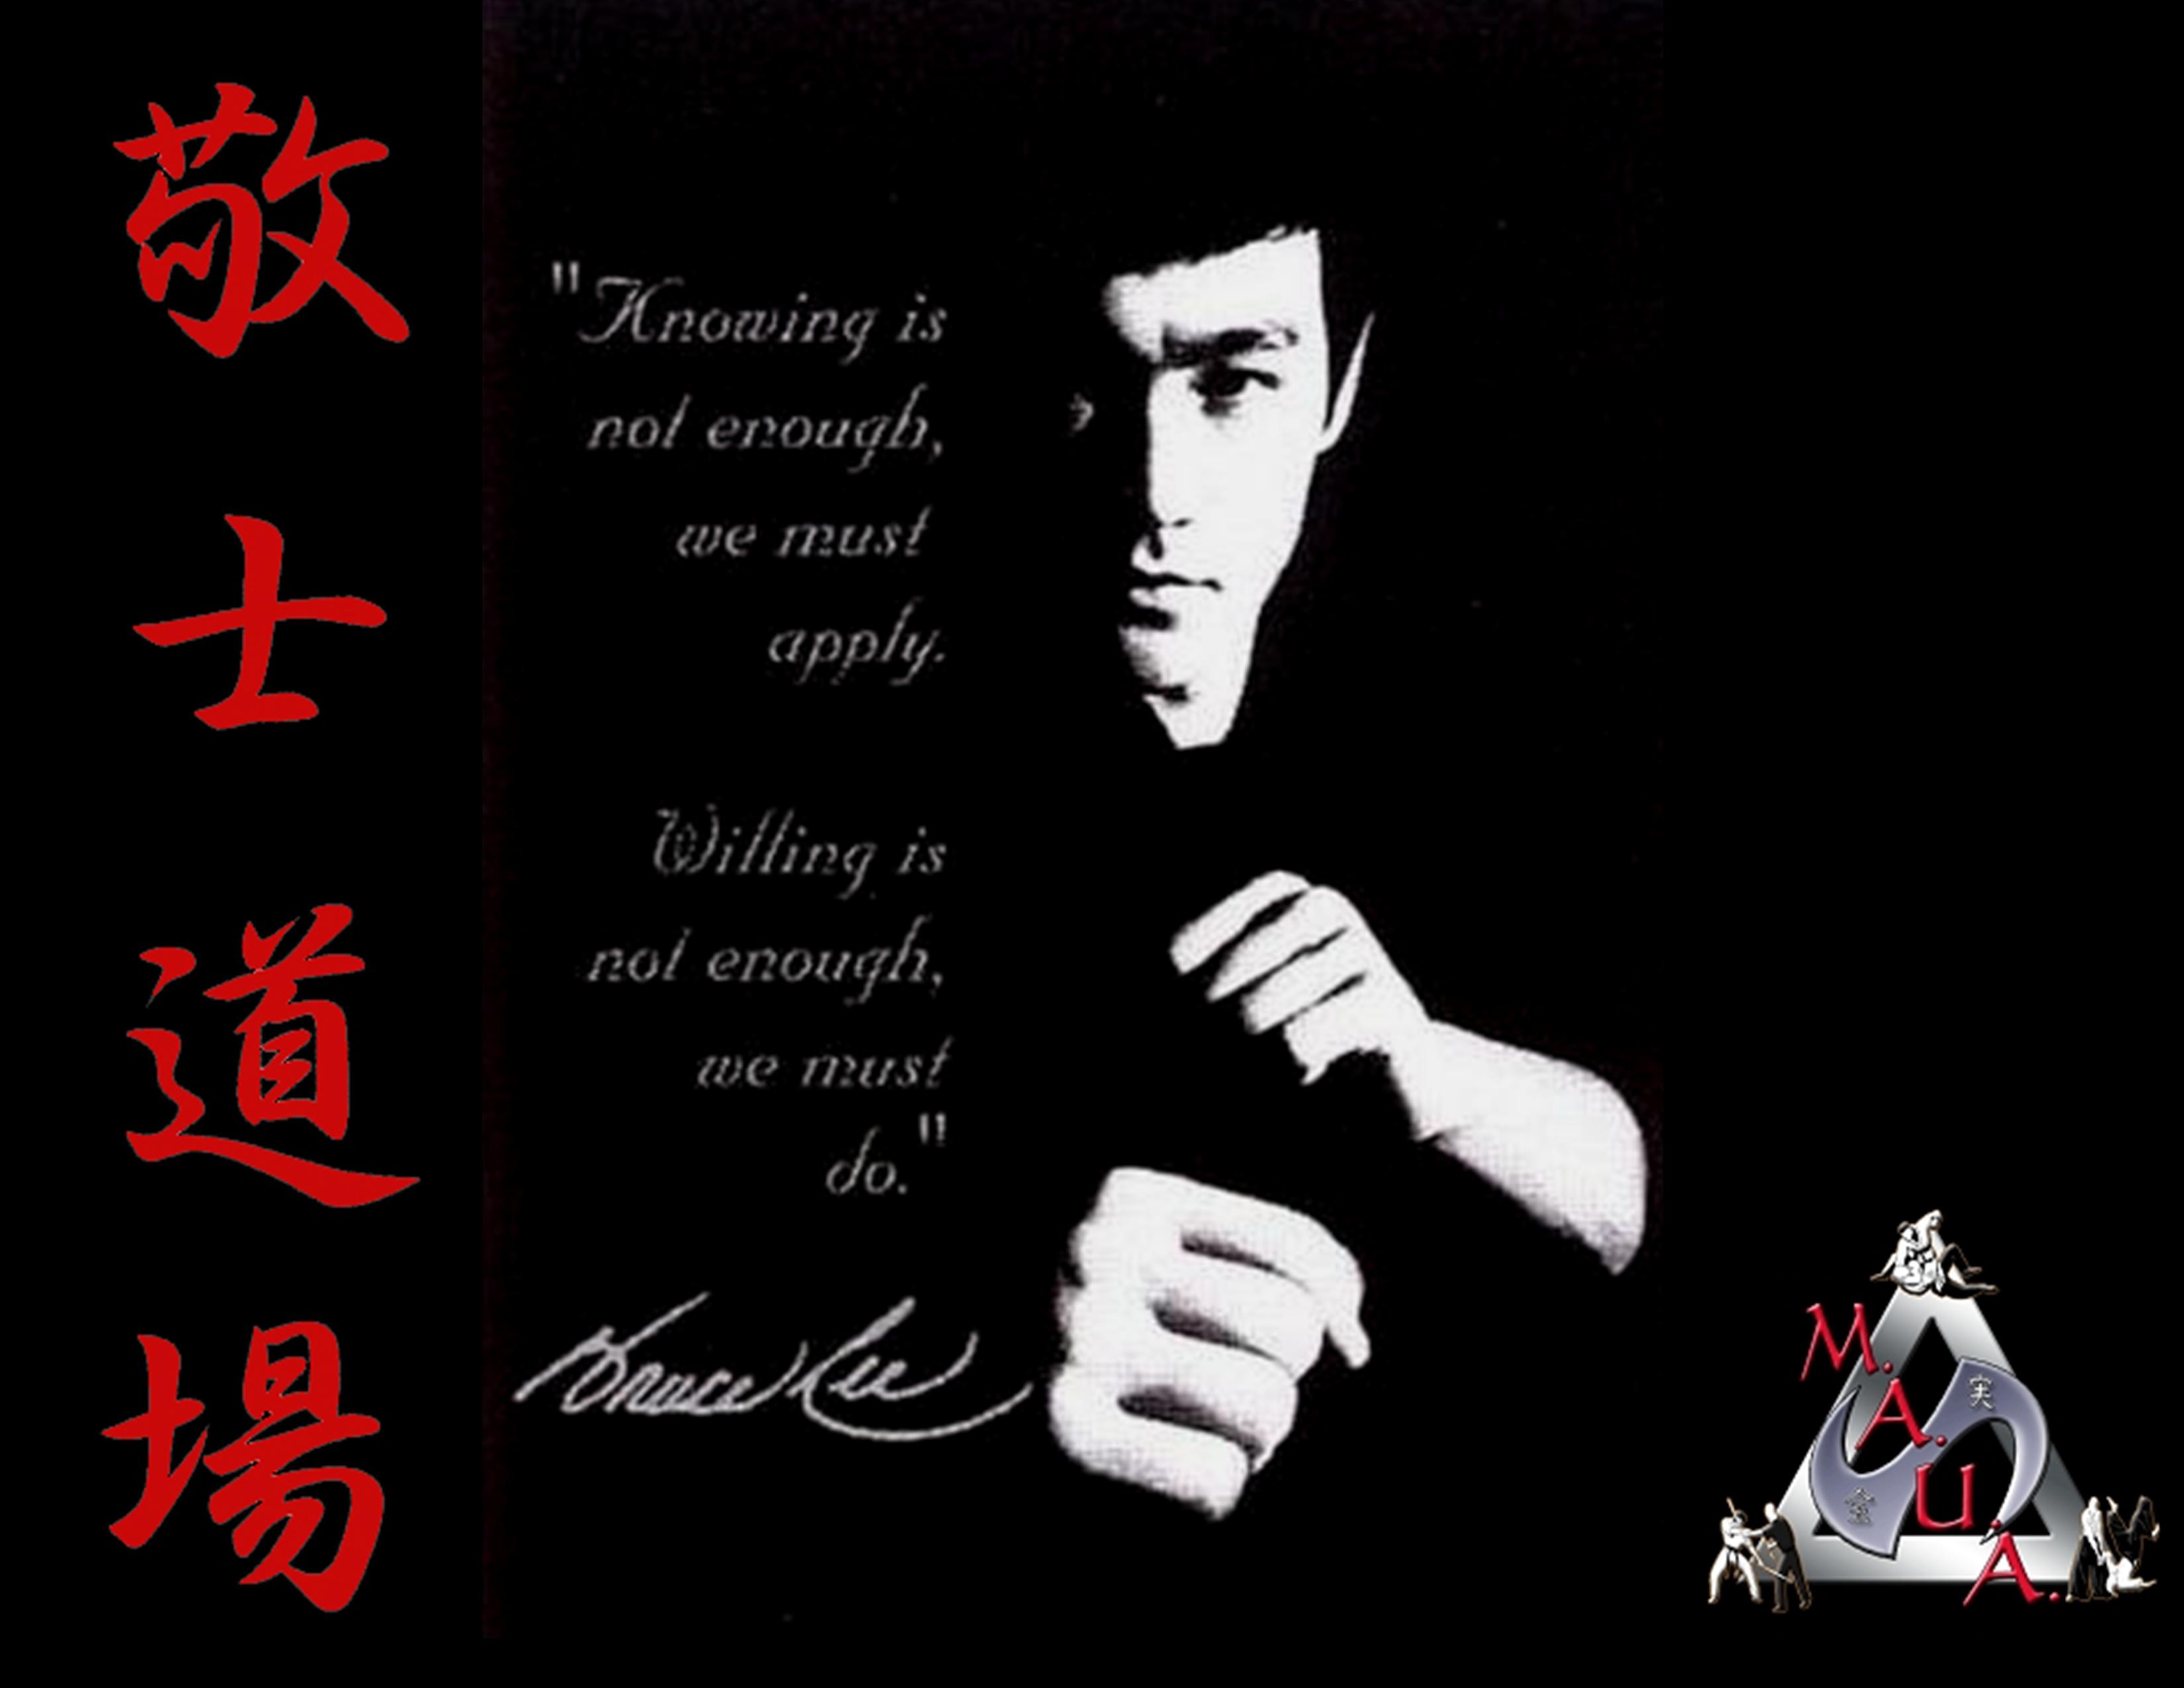 Bruce Lee Quotes Wallpaper QuotesGram 3300x2550